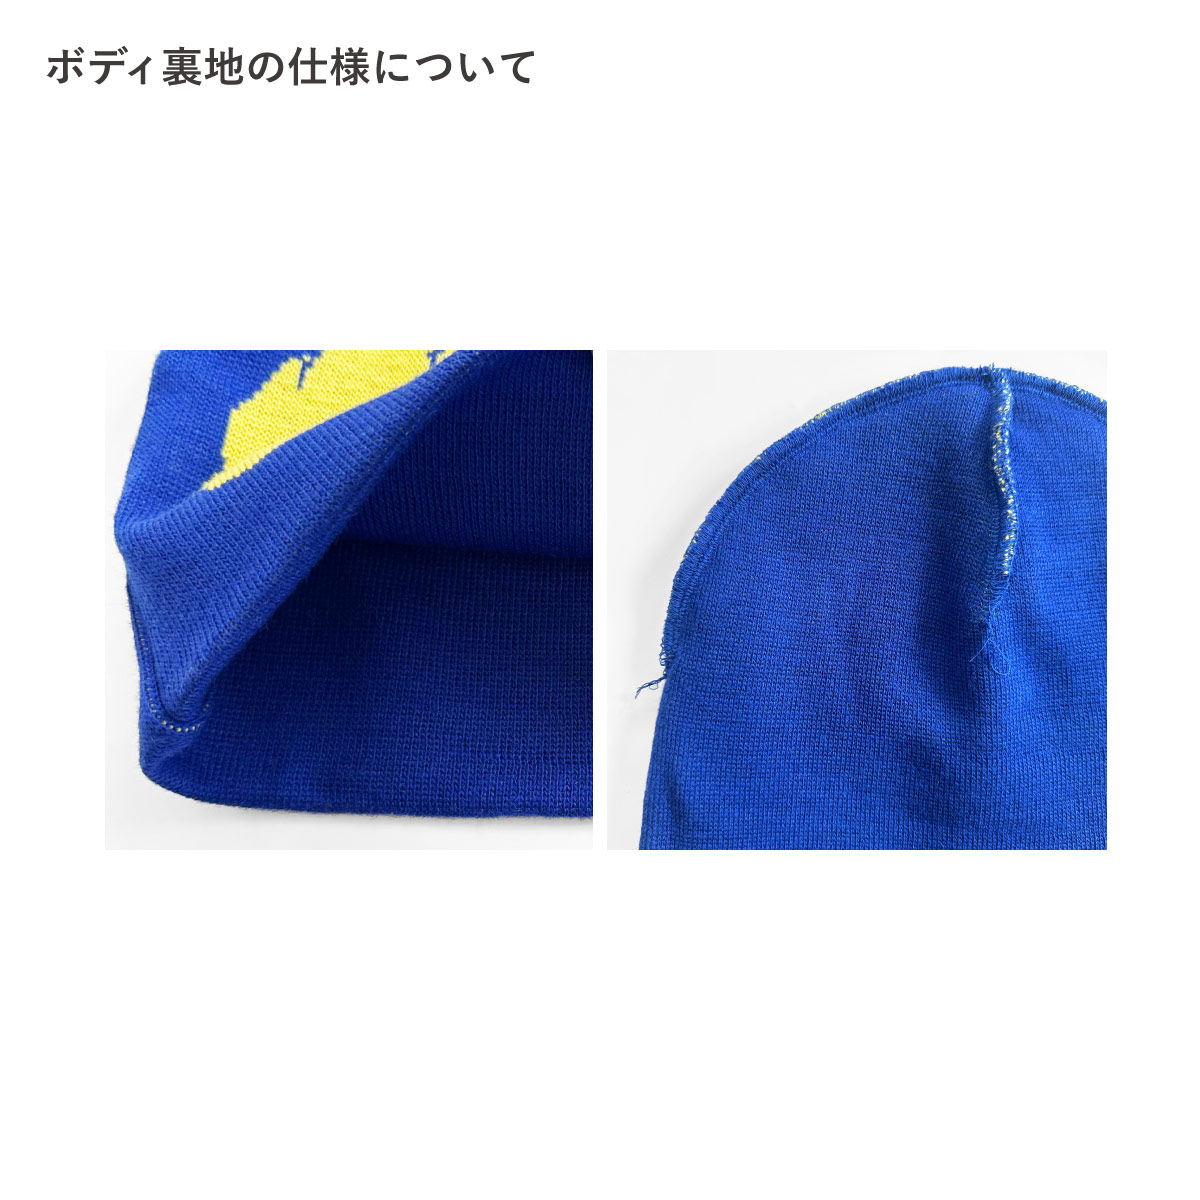 オリジナル織りシングルビーニー[柄糸1色] (品番CPKN-001)